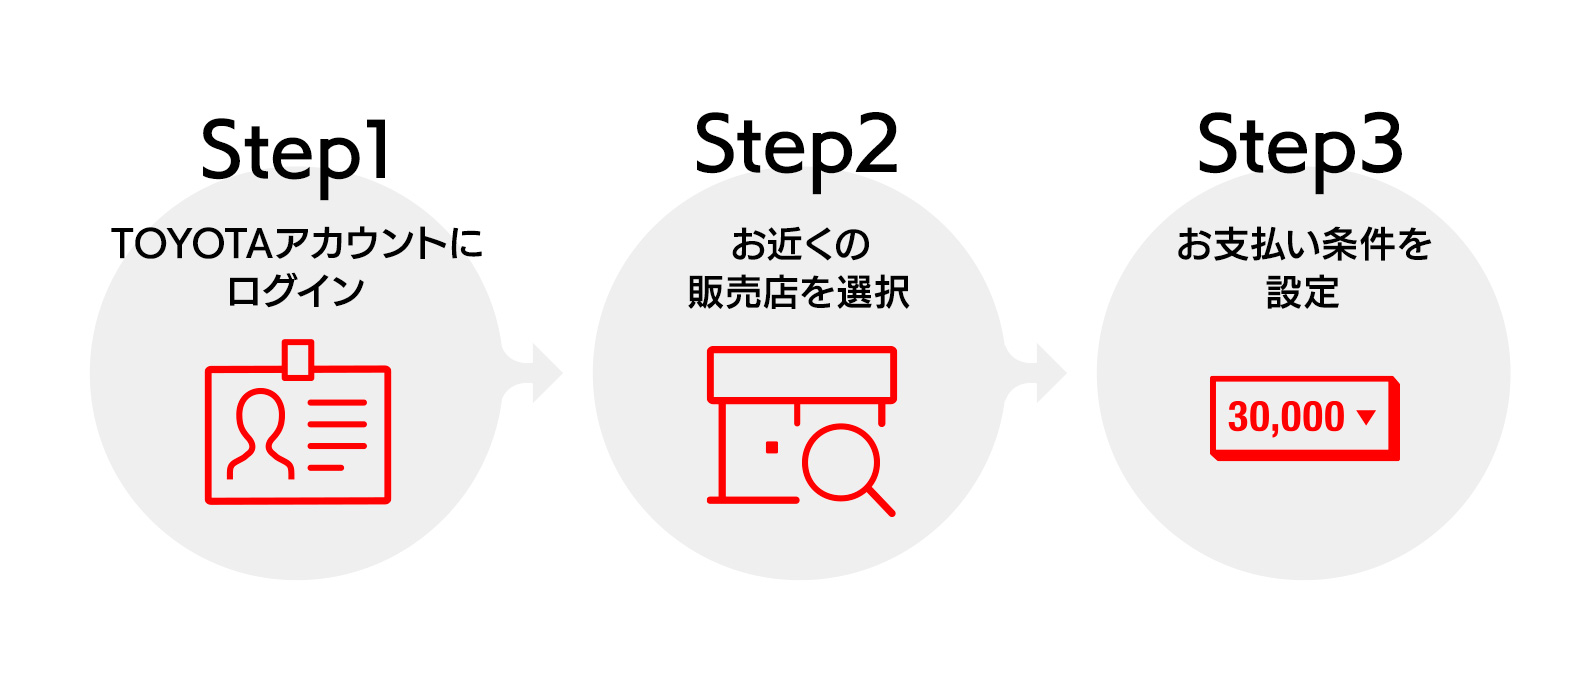 STEP1:TOYOTAアカウントにログイン STEP2:お近くの販売店を選択 STEP3:お支払い条件を設定